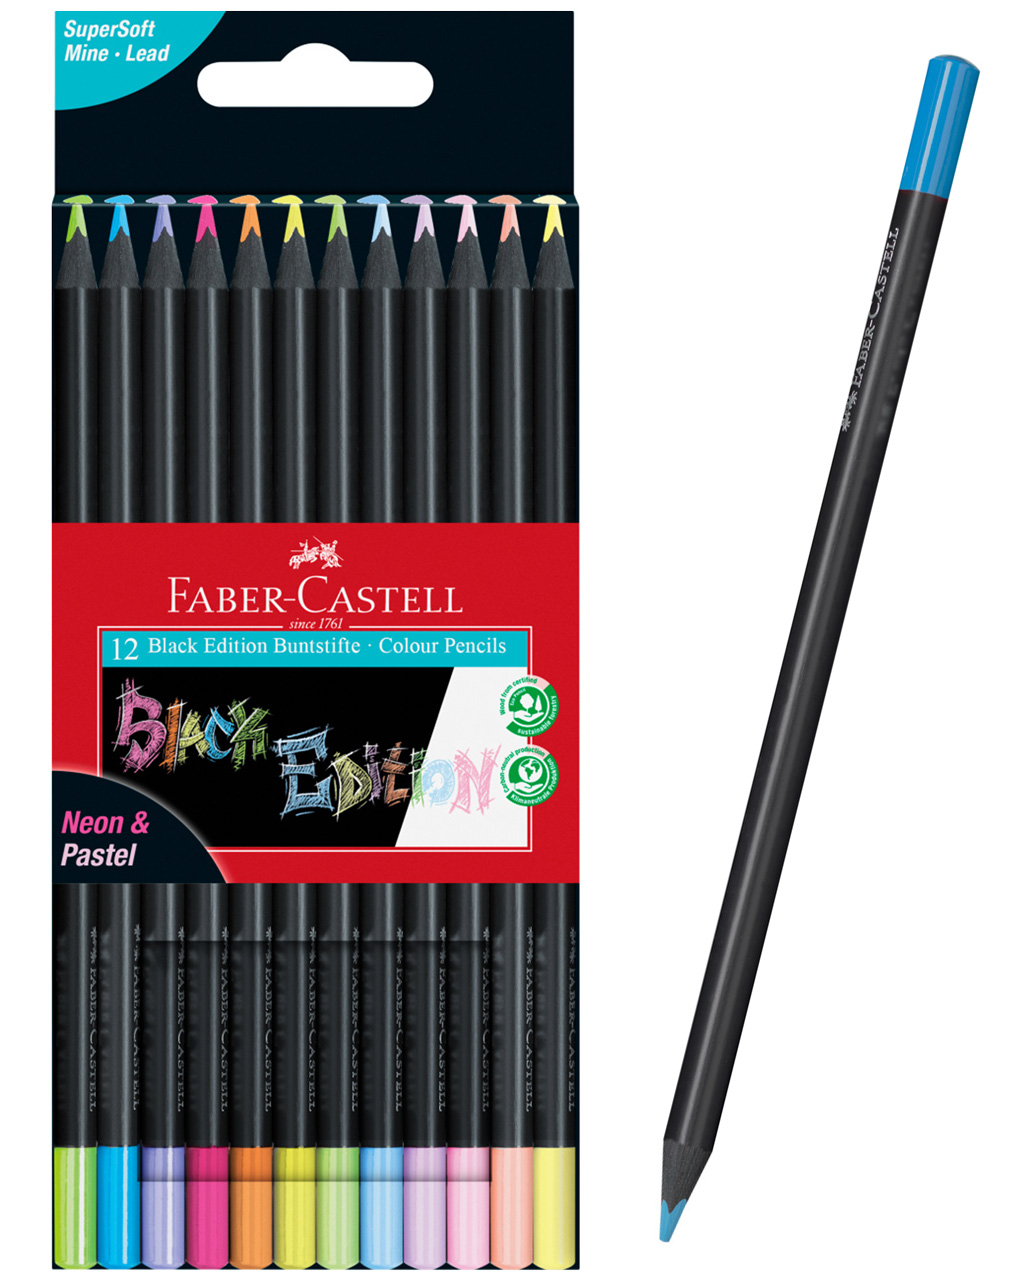 Faber-Castell-Buntstifte-Black-Edition-12er-pastel-neon-Farbstifte-116410-online-kaufen-lafueliki